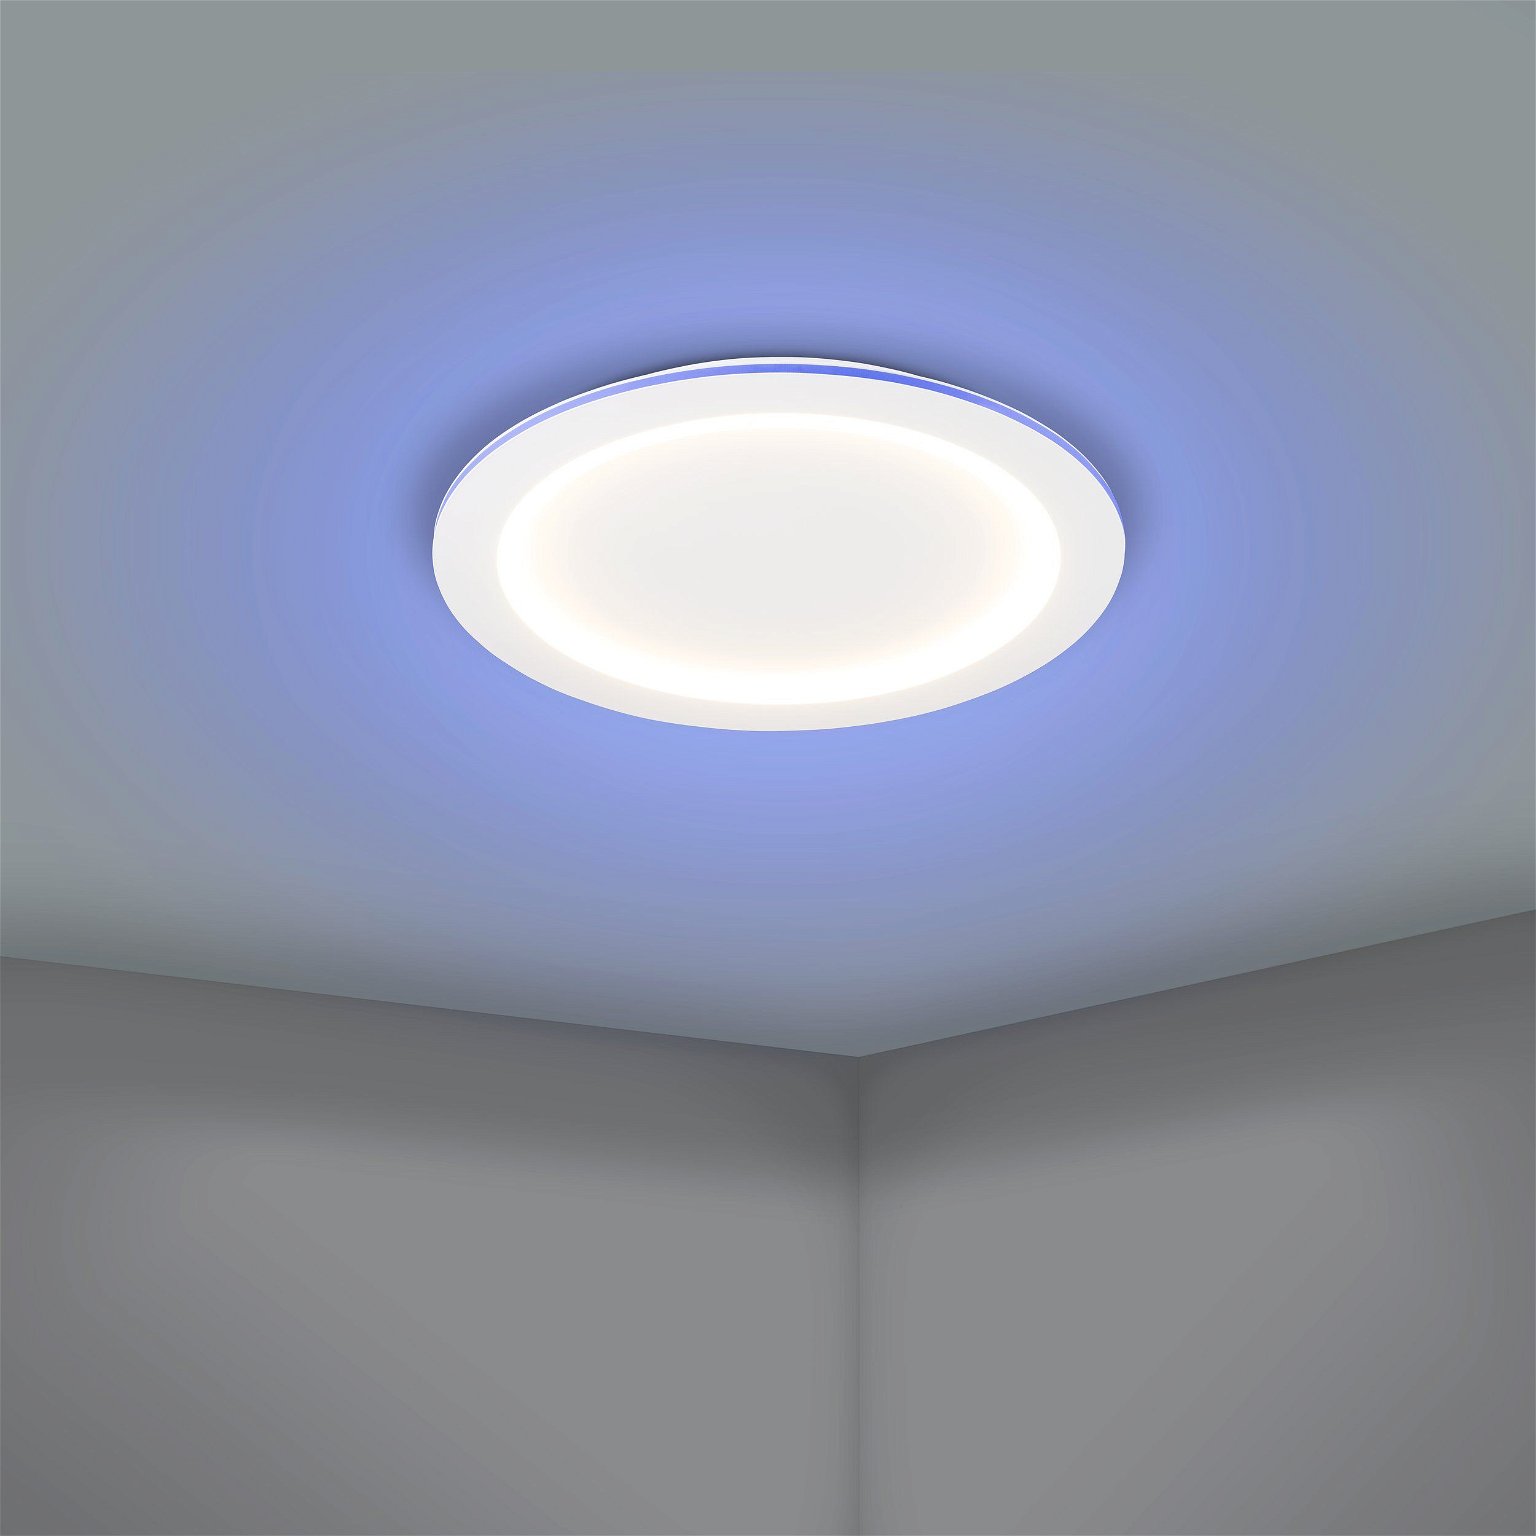 Lubinis LED šviestuvas EGLO Padrogiano, 35W, 2765K, 4600lm, baltos sp., ø59,5 x 5 cm - 3